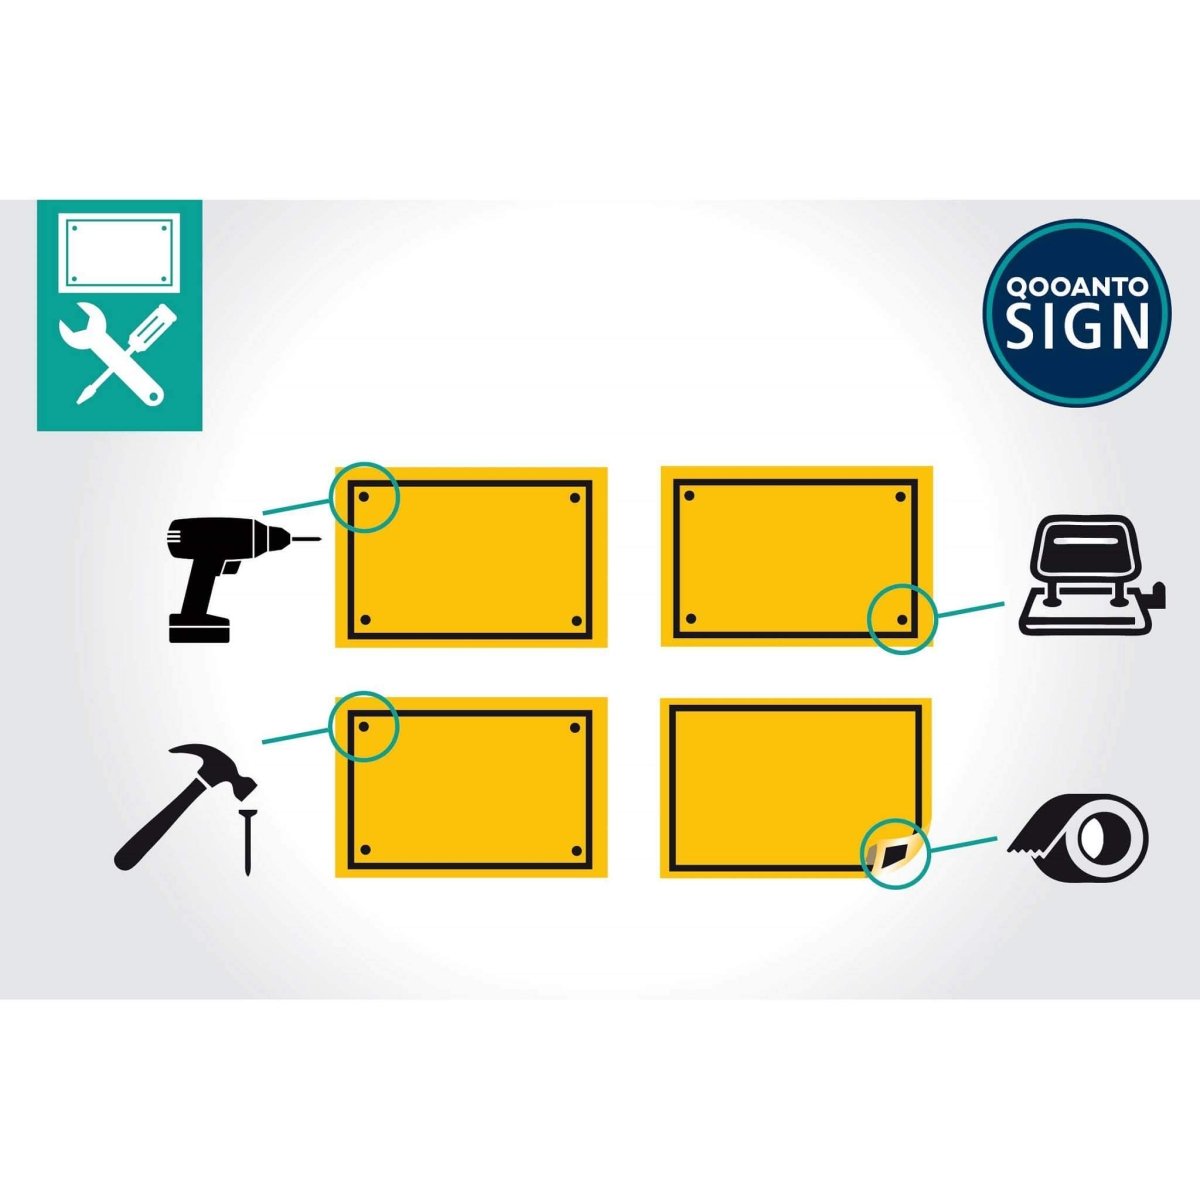 Privatgrundstück Parken Verboten! Widerrechtlich Geparkte Fahrzeuge Werden Kostenpflichtig Abgeschleppt Schild aus Alu-Verbund mit UV-Schutz - QOOANTO-SIGN